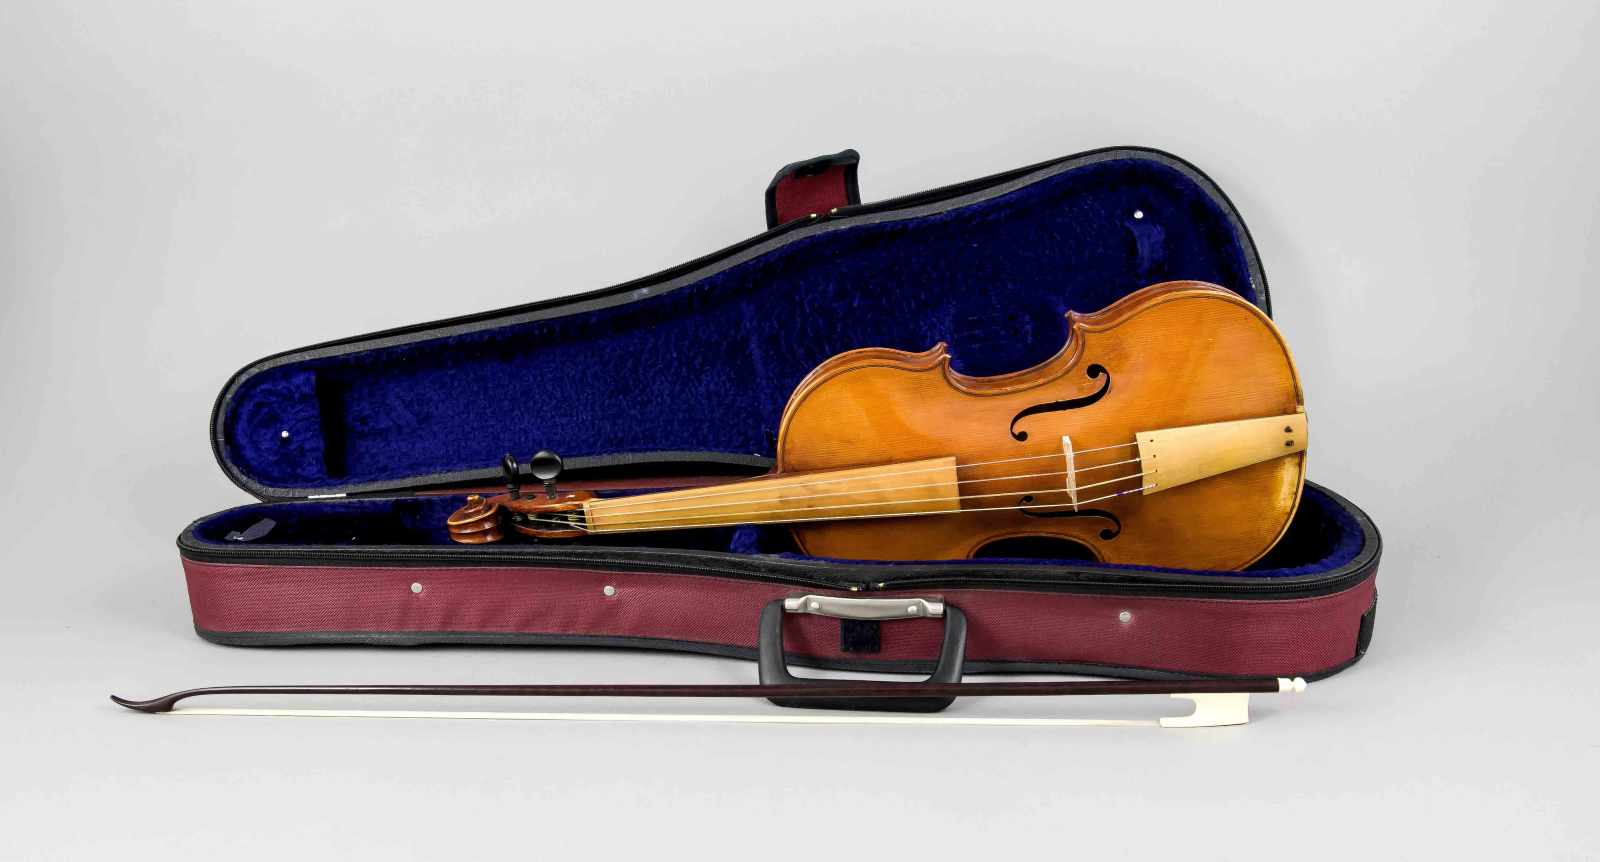 Barock-Geige nach dem Modell von Nicolo Amati aus dem Jahre 1649, Etikett (blaues Papier):"Josef